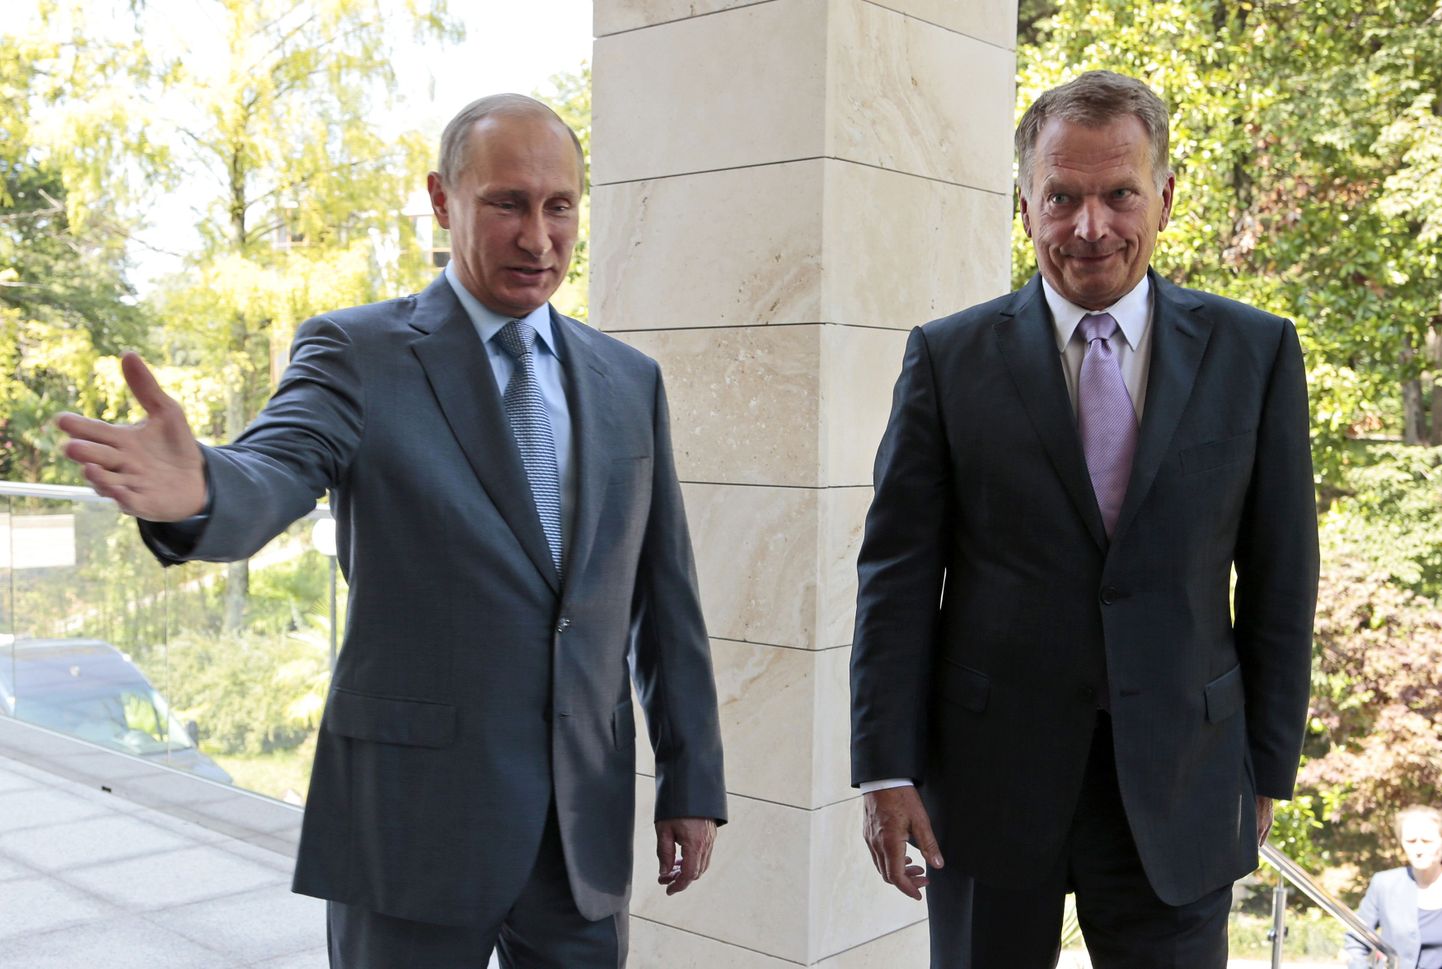 Президент России Владимир Путин и президент Финляндии Саули Ниинисте на встрече в Сочи, уже после аннексии Крыма и начала боевых действий на Донбассе, август 2014 года.